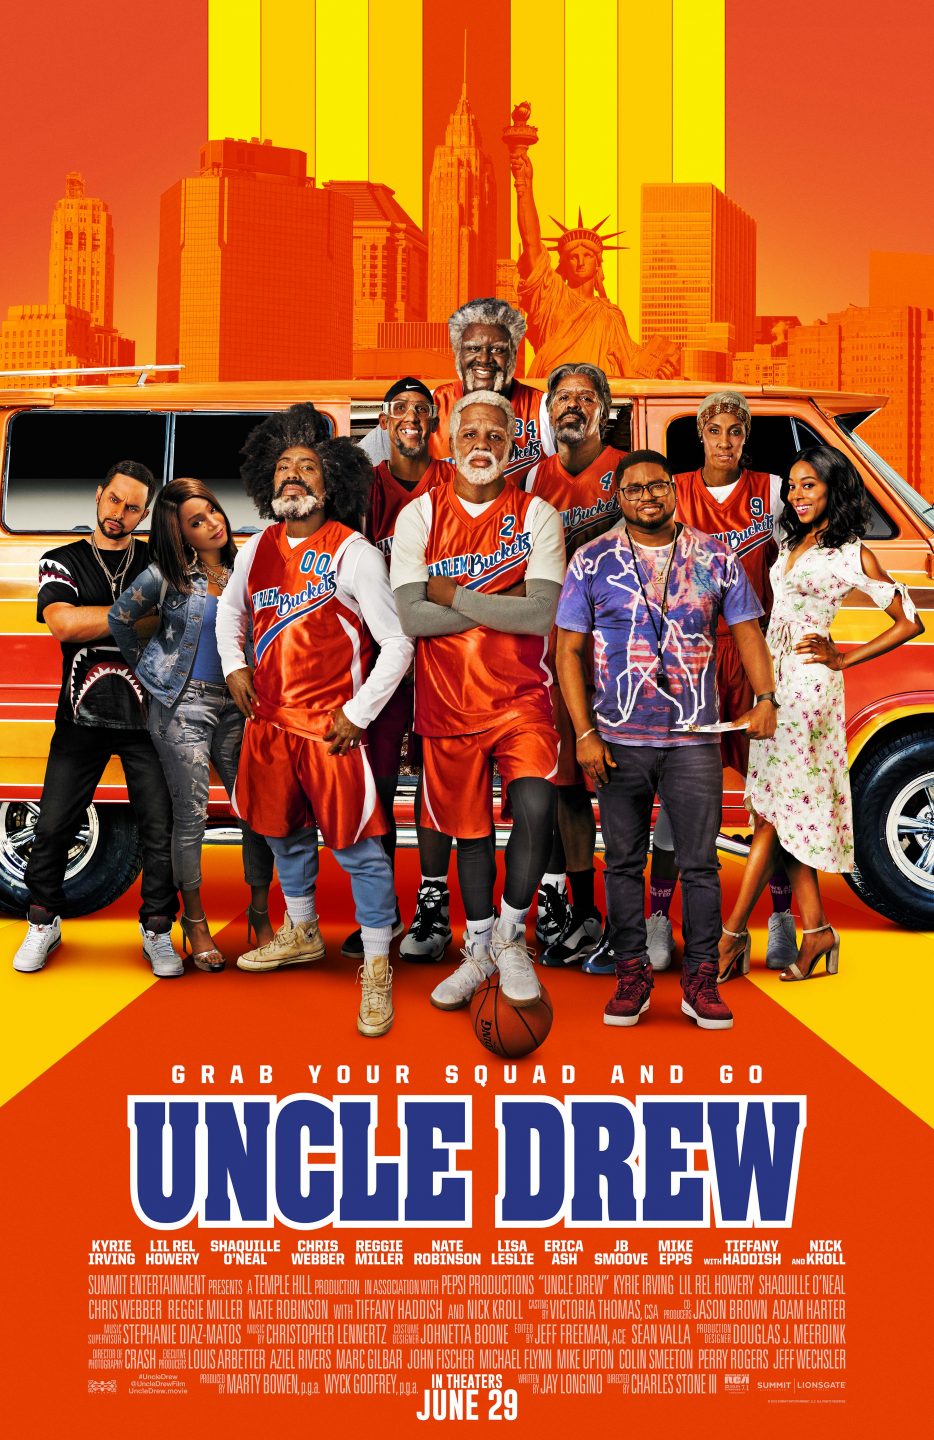 Uncle Drew poster (Lionsgate)